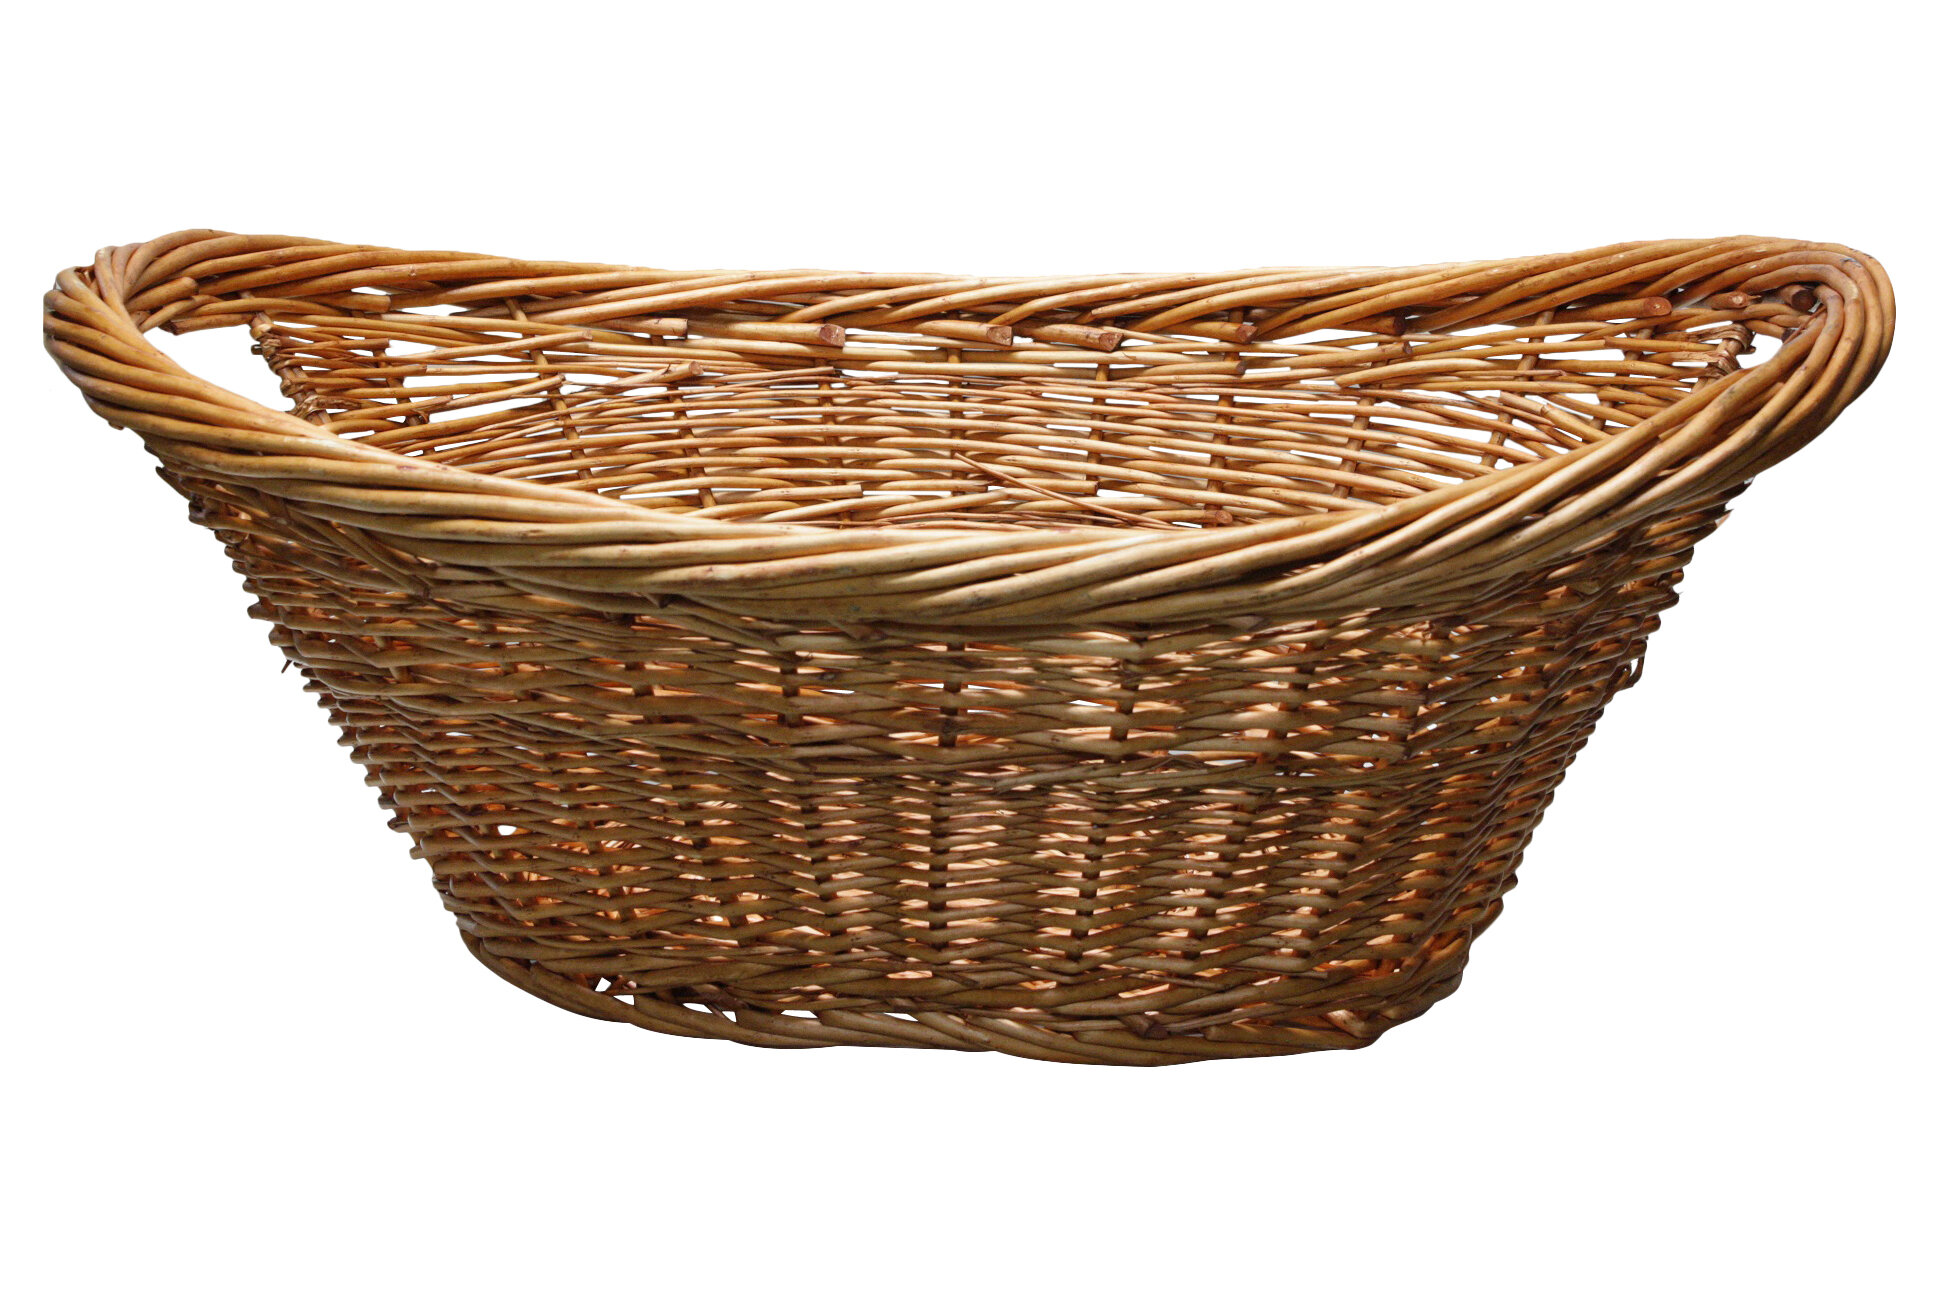 Destidesign Handwoven Wicker Laundry Basket Reviews Wayfair